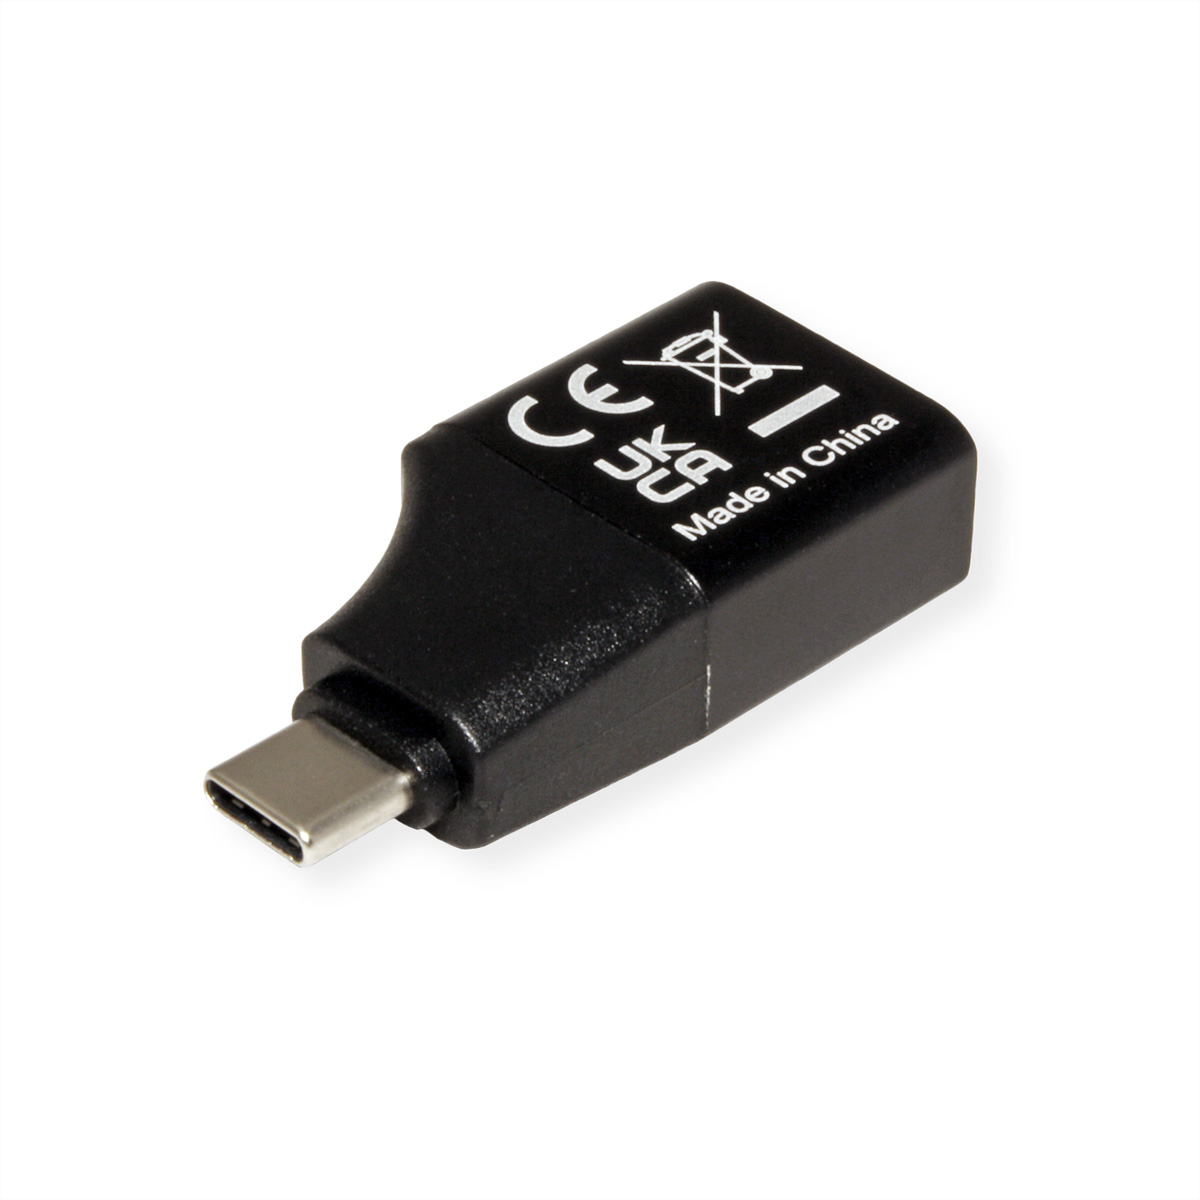 Adapter USB-DisplayPort USB Display C Typ - VALUE v1.2 DisplayPort Adapter